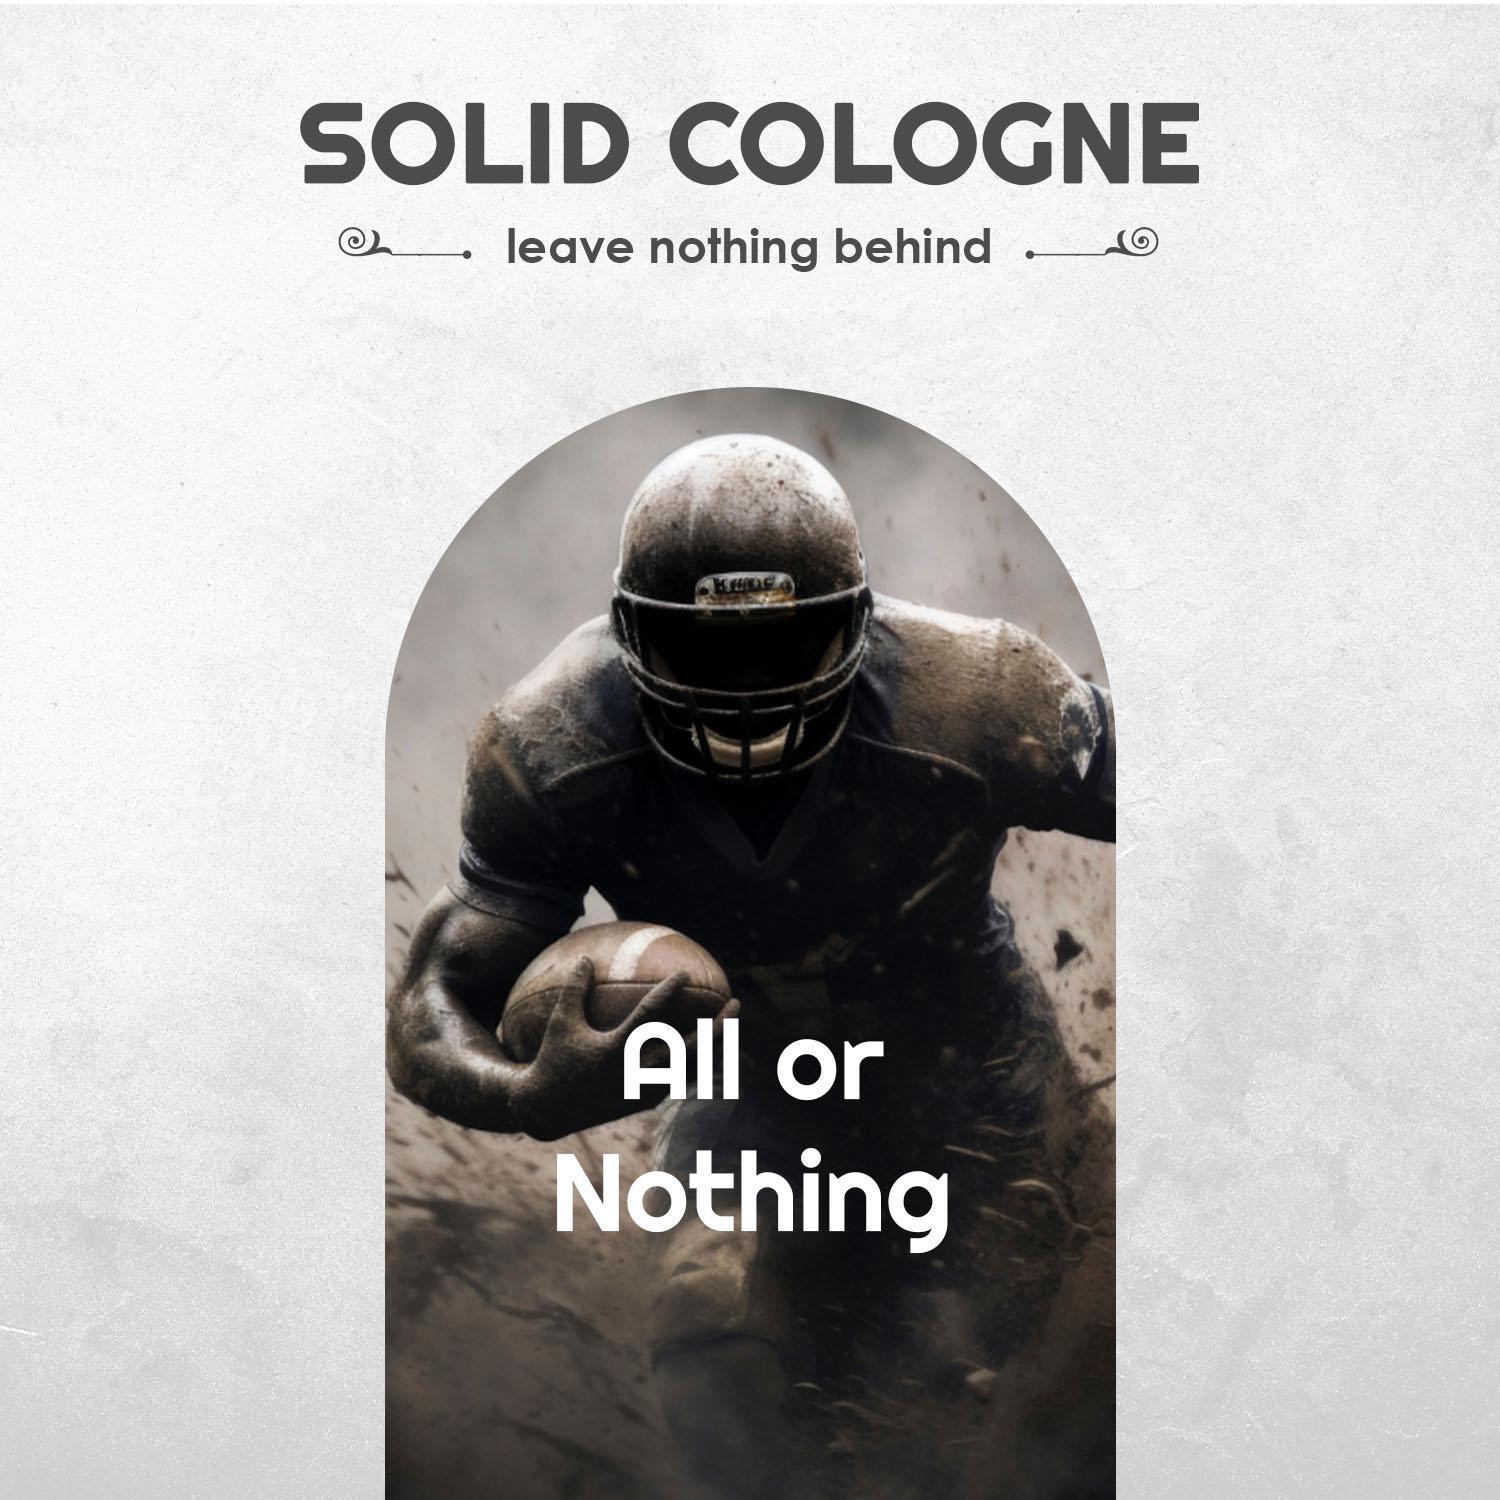 The Man Brand’s Solid Cologne Sample Pack for Men - Travel Size Natural Solid Men’s Cologne - Men's Fragrance Solid Cologne